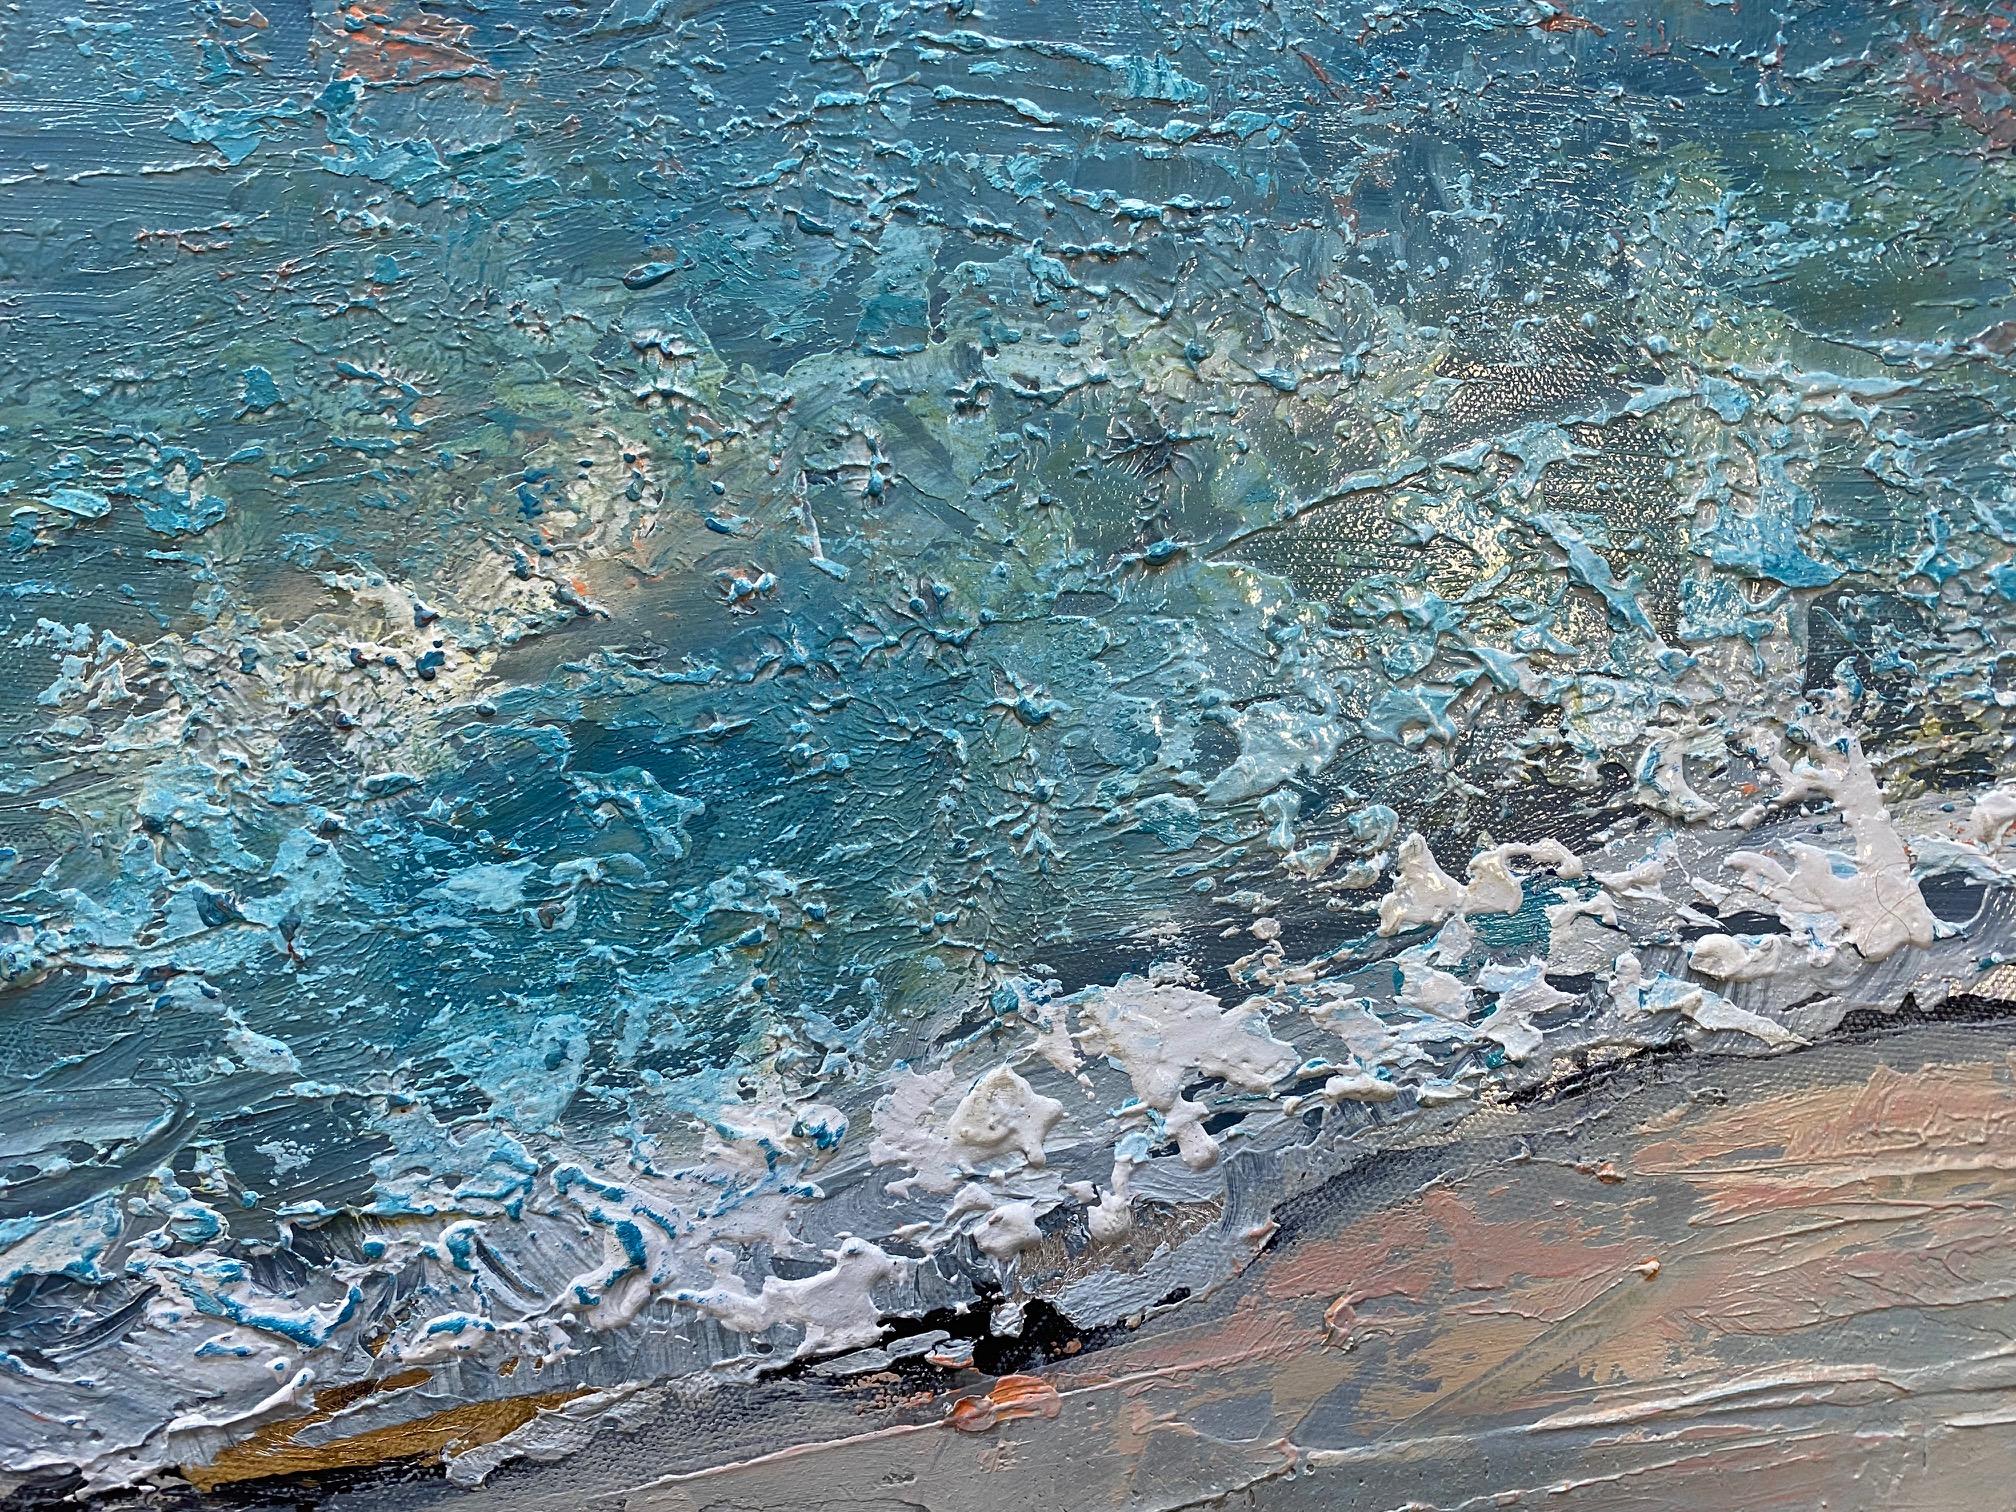 The Edge, original 24x36 abstrakter expressionistischer Meereslandschaftsbild im Stil von The Edge (Abstrakter Expressionismus), Painting, von Anita Lewis